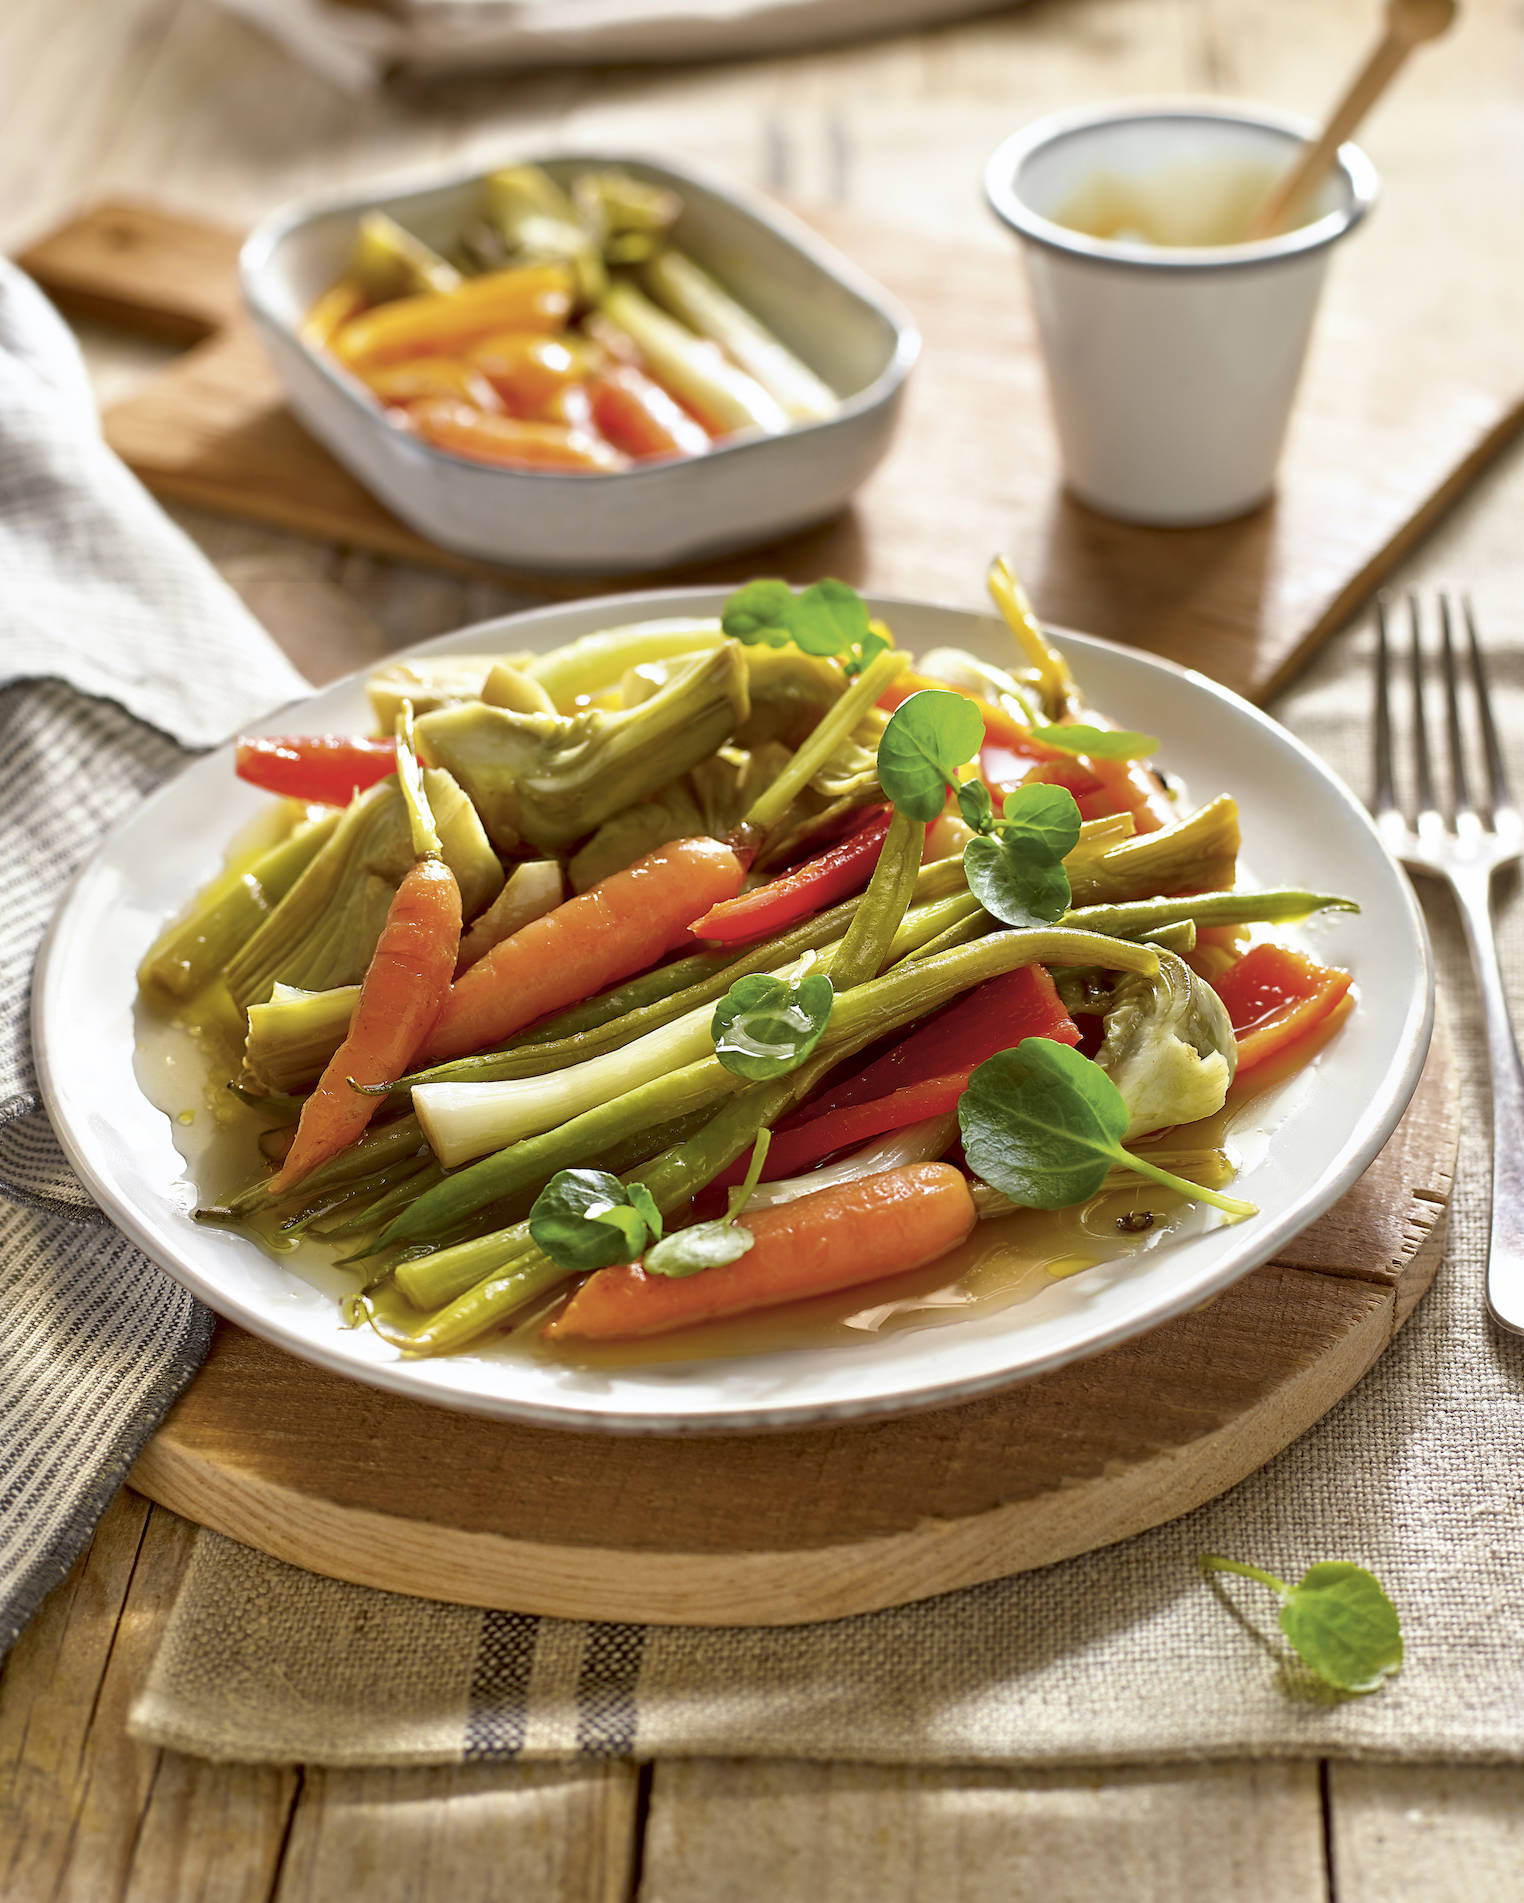 Receta fácil y rápida de verduras escabechadas.